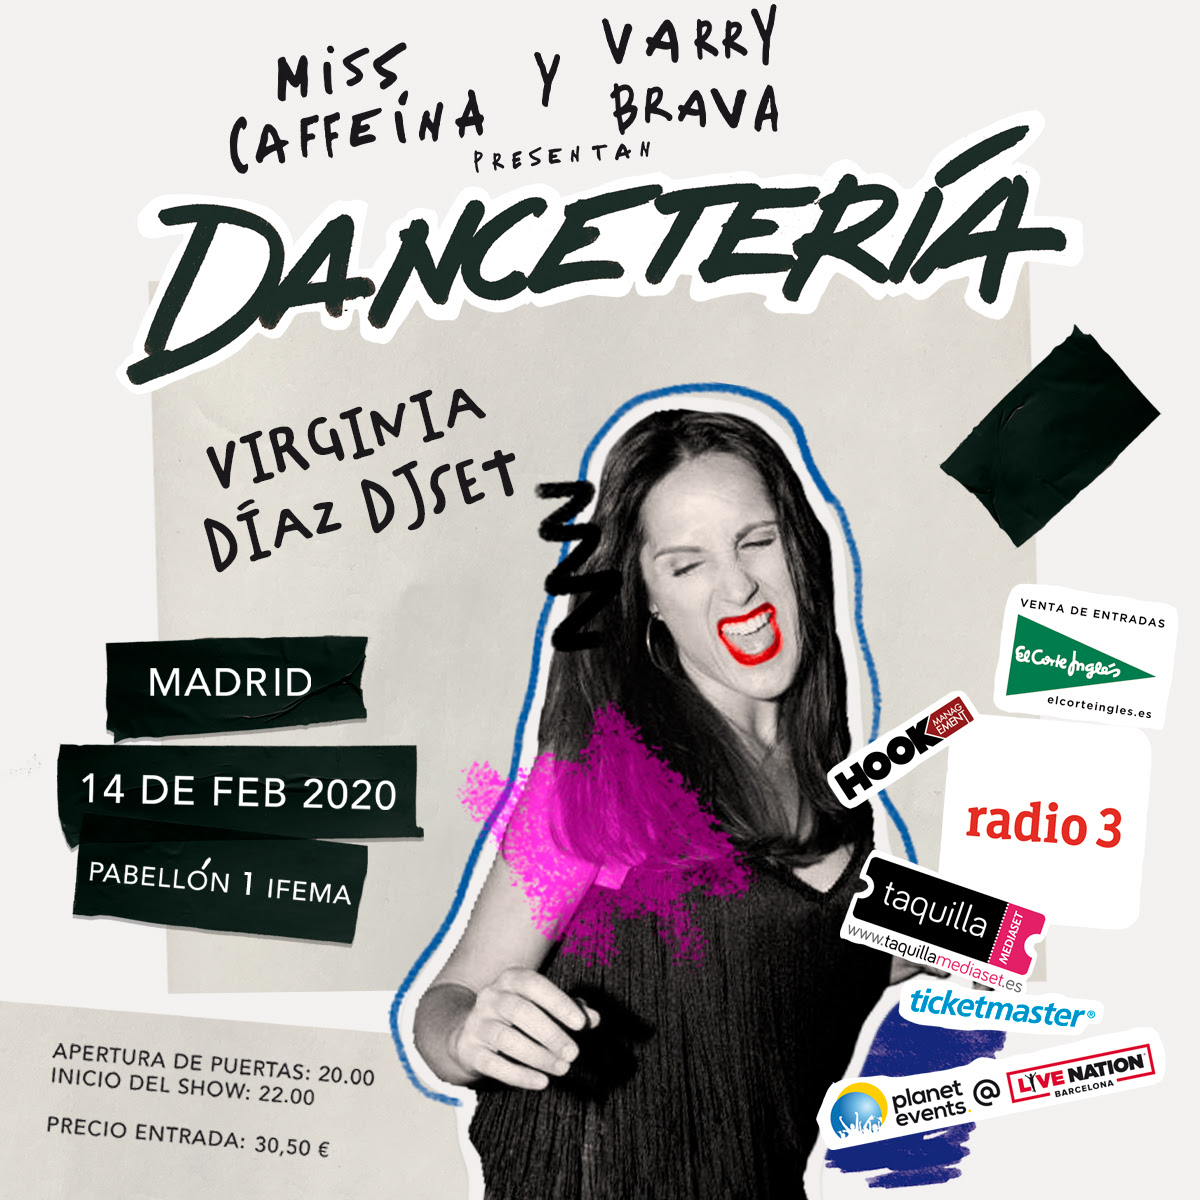 Virginia Díaz (DJ set) se une al concierto de Dancetería en Madrid